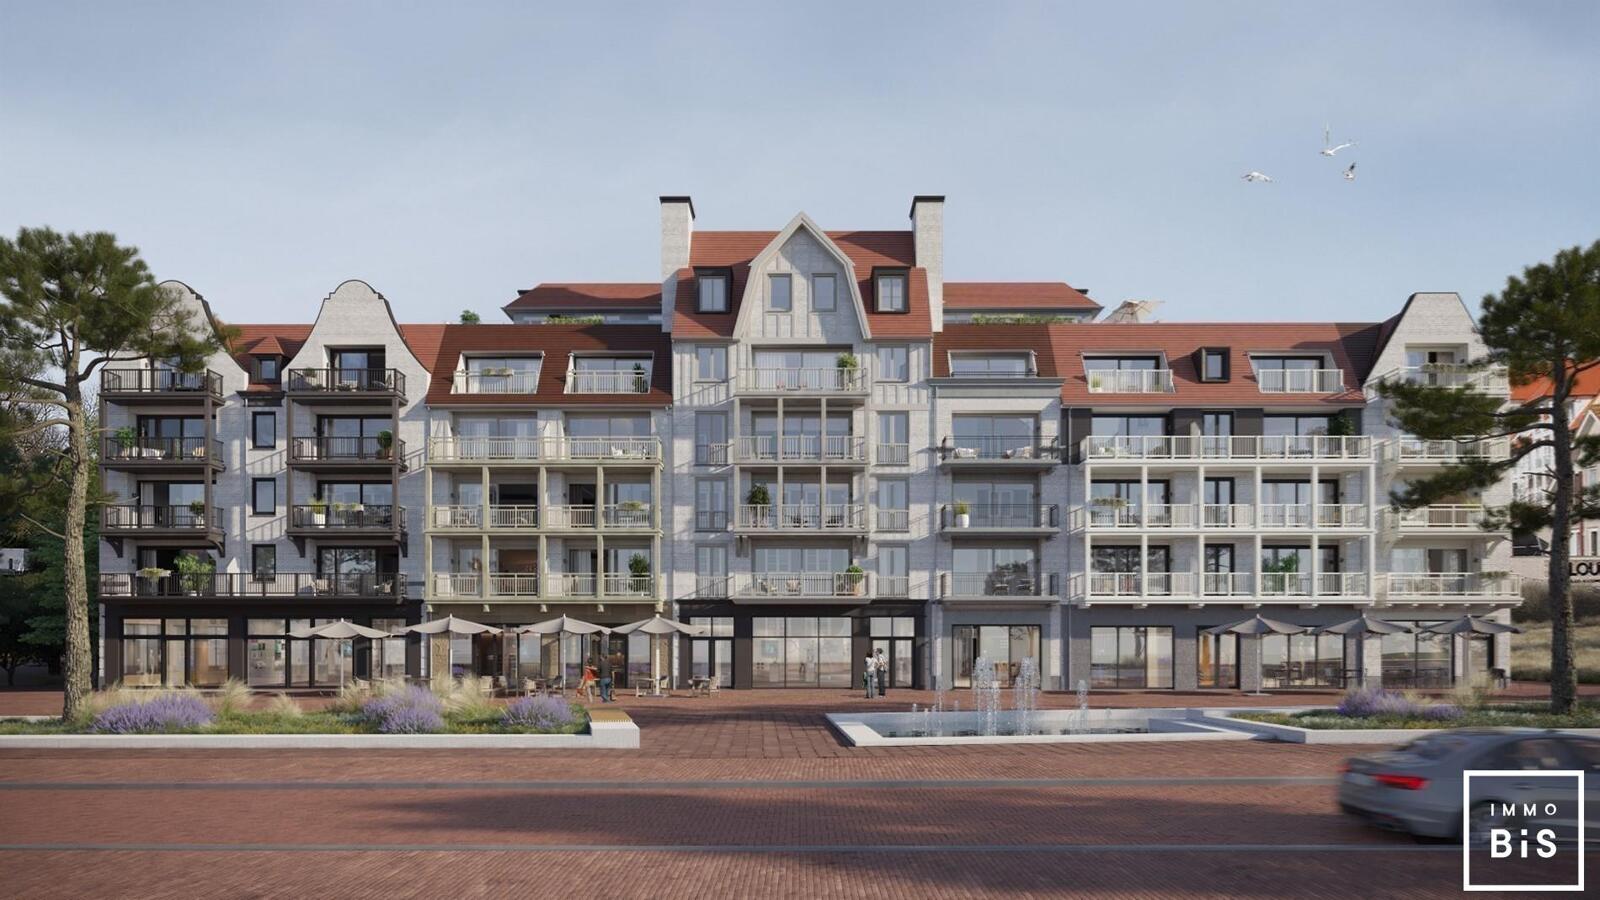 " Appartement villa moderne avec terrasse sur la Digue à Cadzand - Résidence Duinhof-Noord " 6